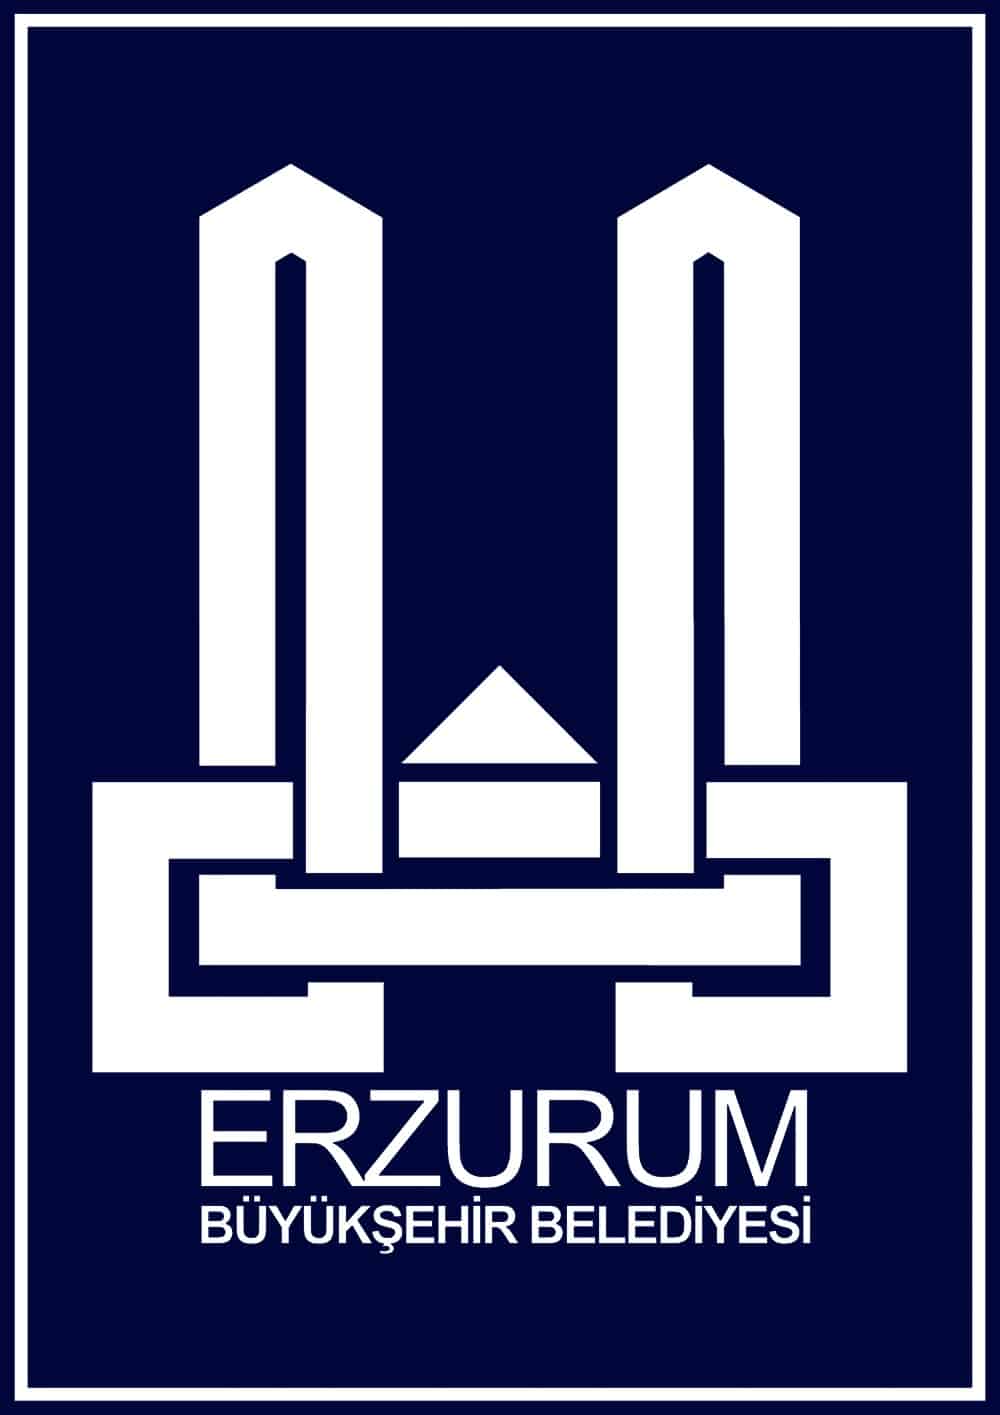 erzurum buyuksehir belediyesi logo